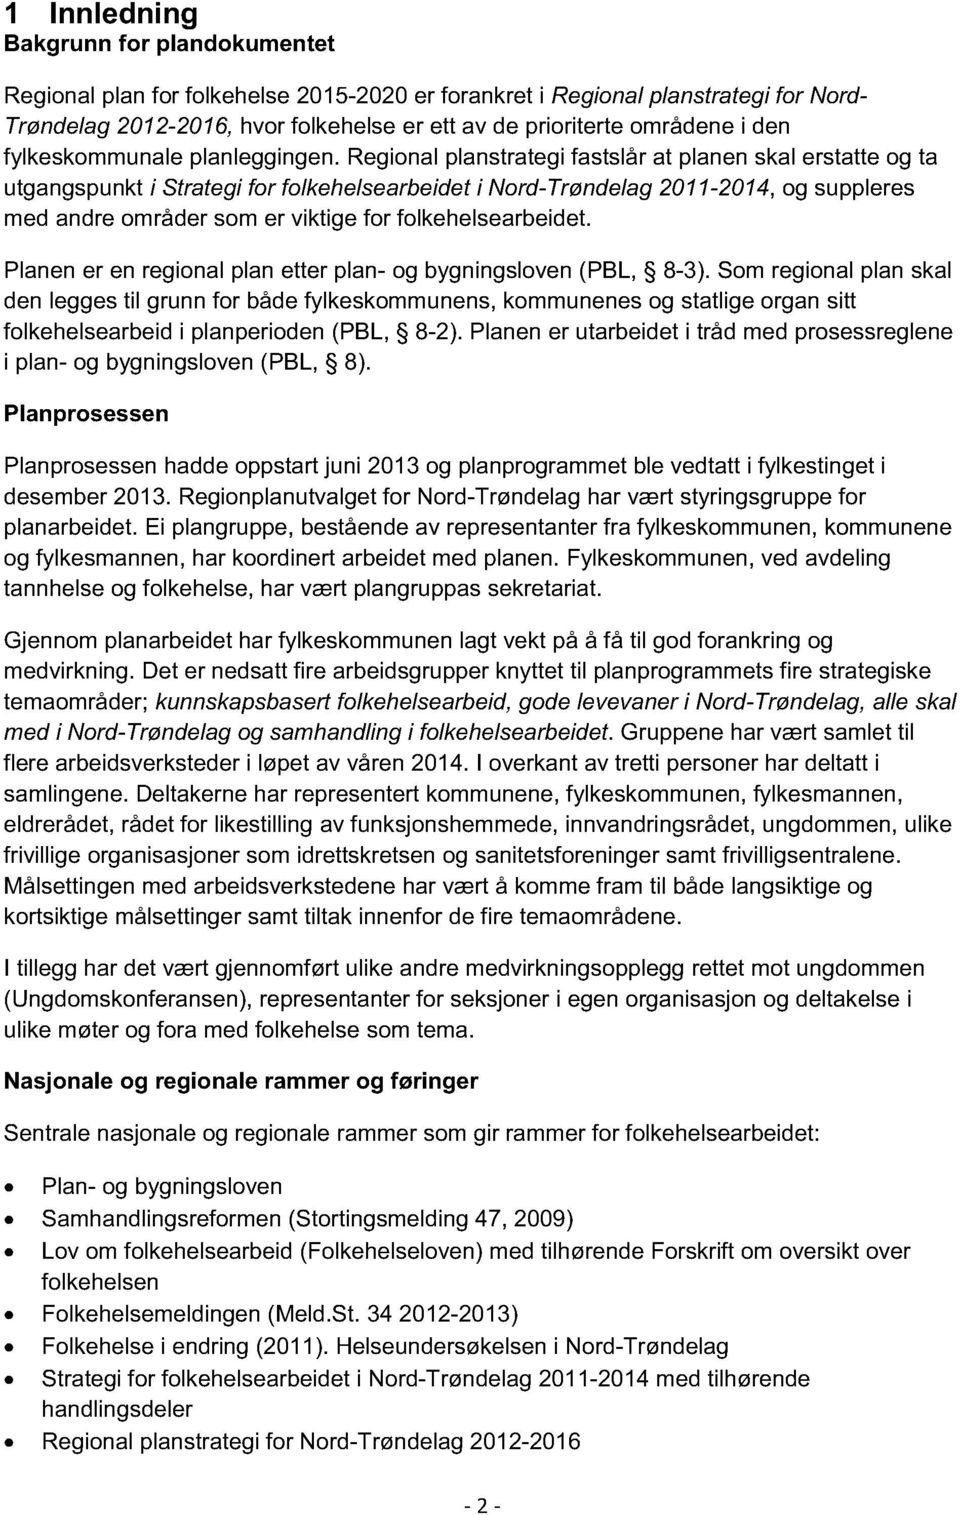 Regional planstrategi fastslår at planen skal erstatte og ta utgangspunkt i Strategi for folkehelsearbeidet i Nord-Trøndelag 2011-2014, og suppleres med andre områder som er viktige for